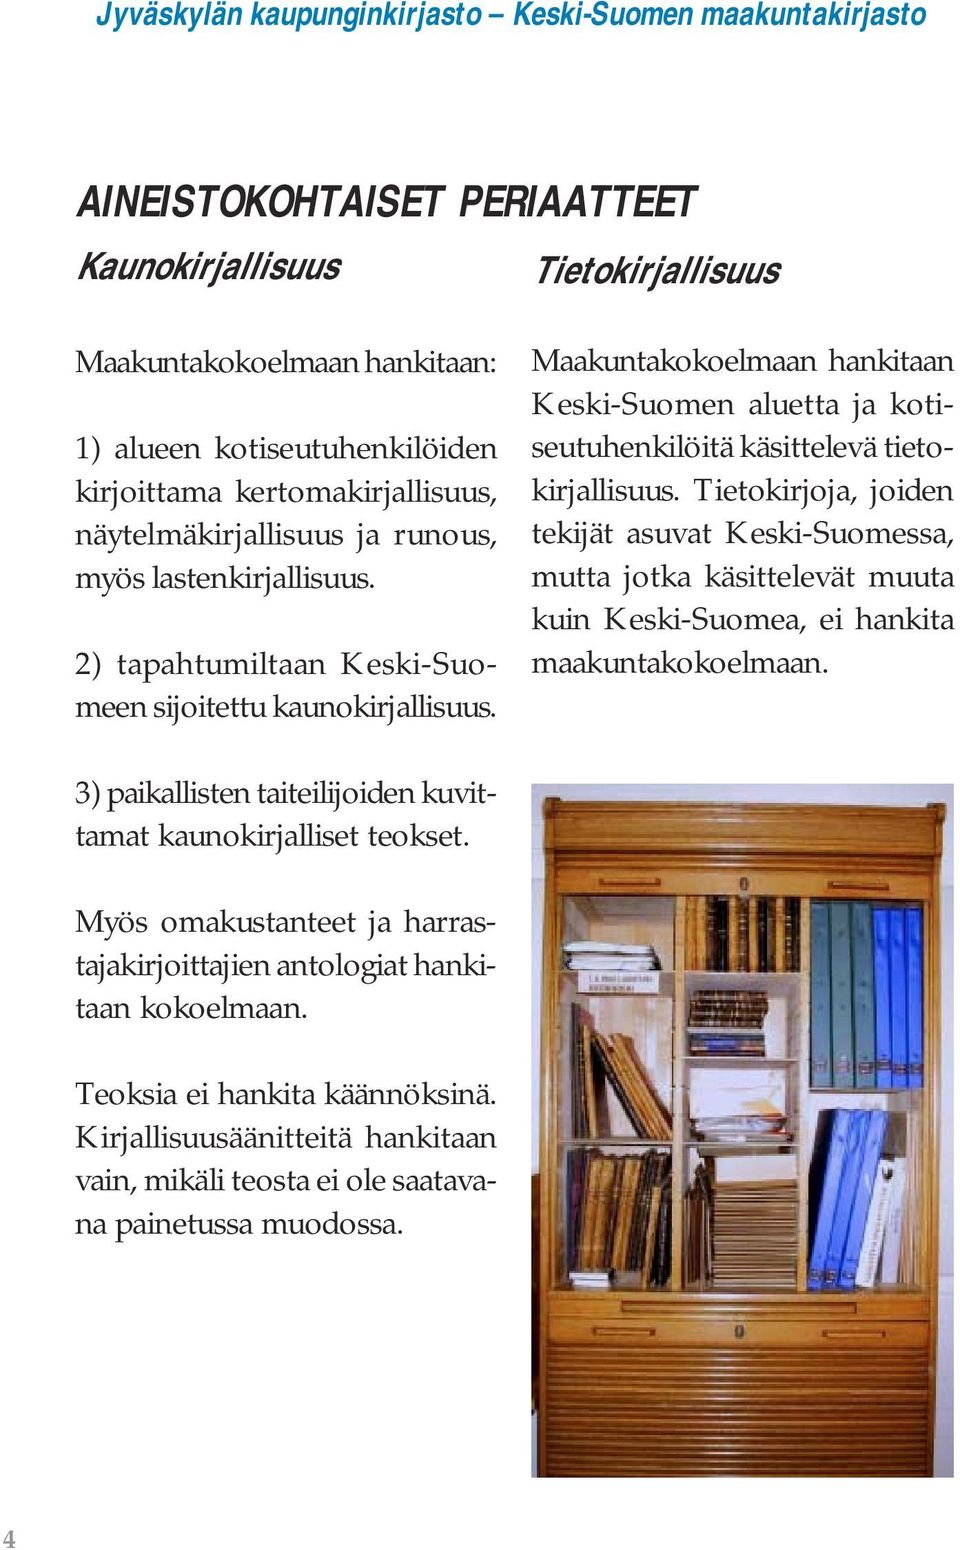 Tietokirjoja, joiden tekijät asuvat Keski-Suomessa, mutta jotka käsittelevät muuta kuin Keski-Suomea, ei hankita maakuntakokoelmaan.